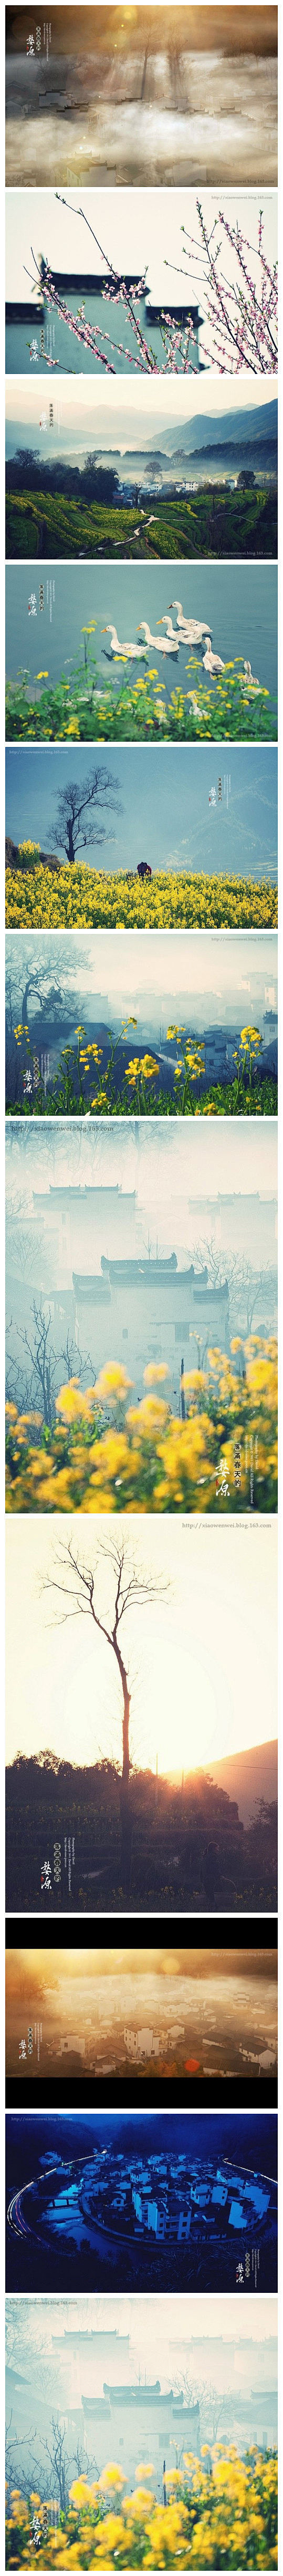 【江西·婺源】中国最美丽的小镇